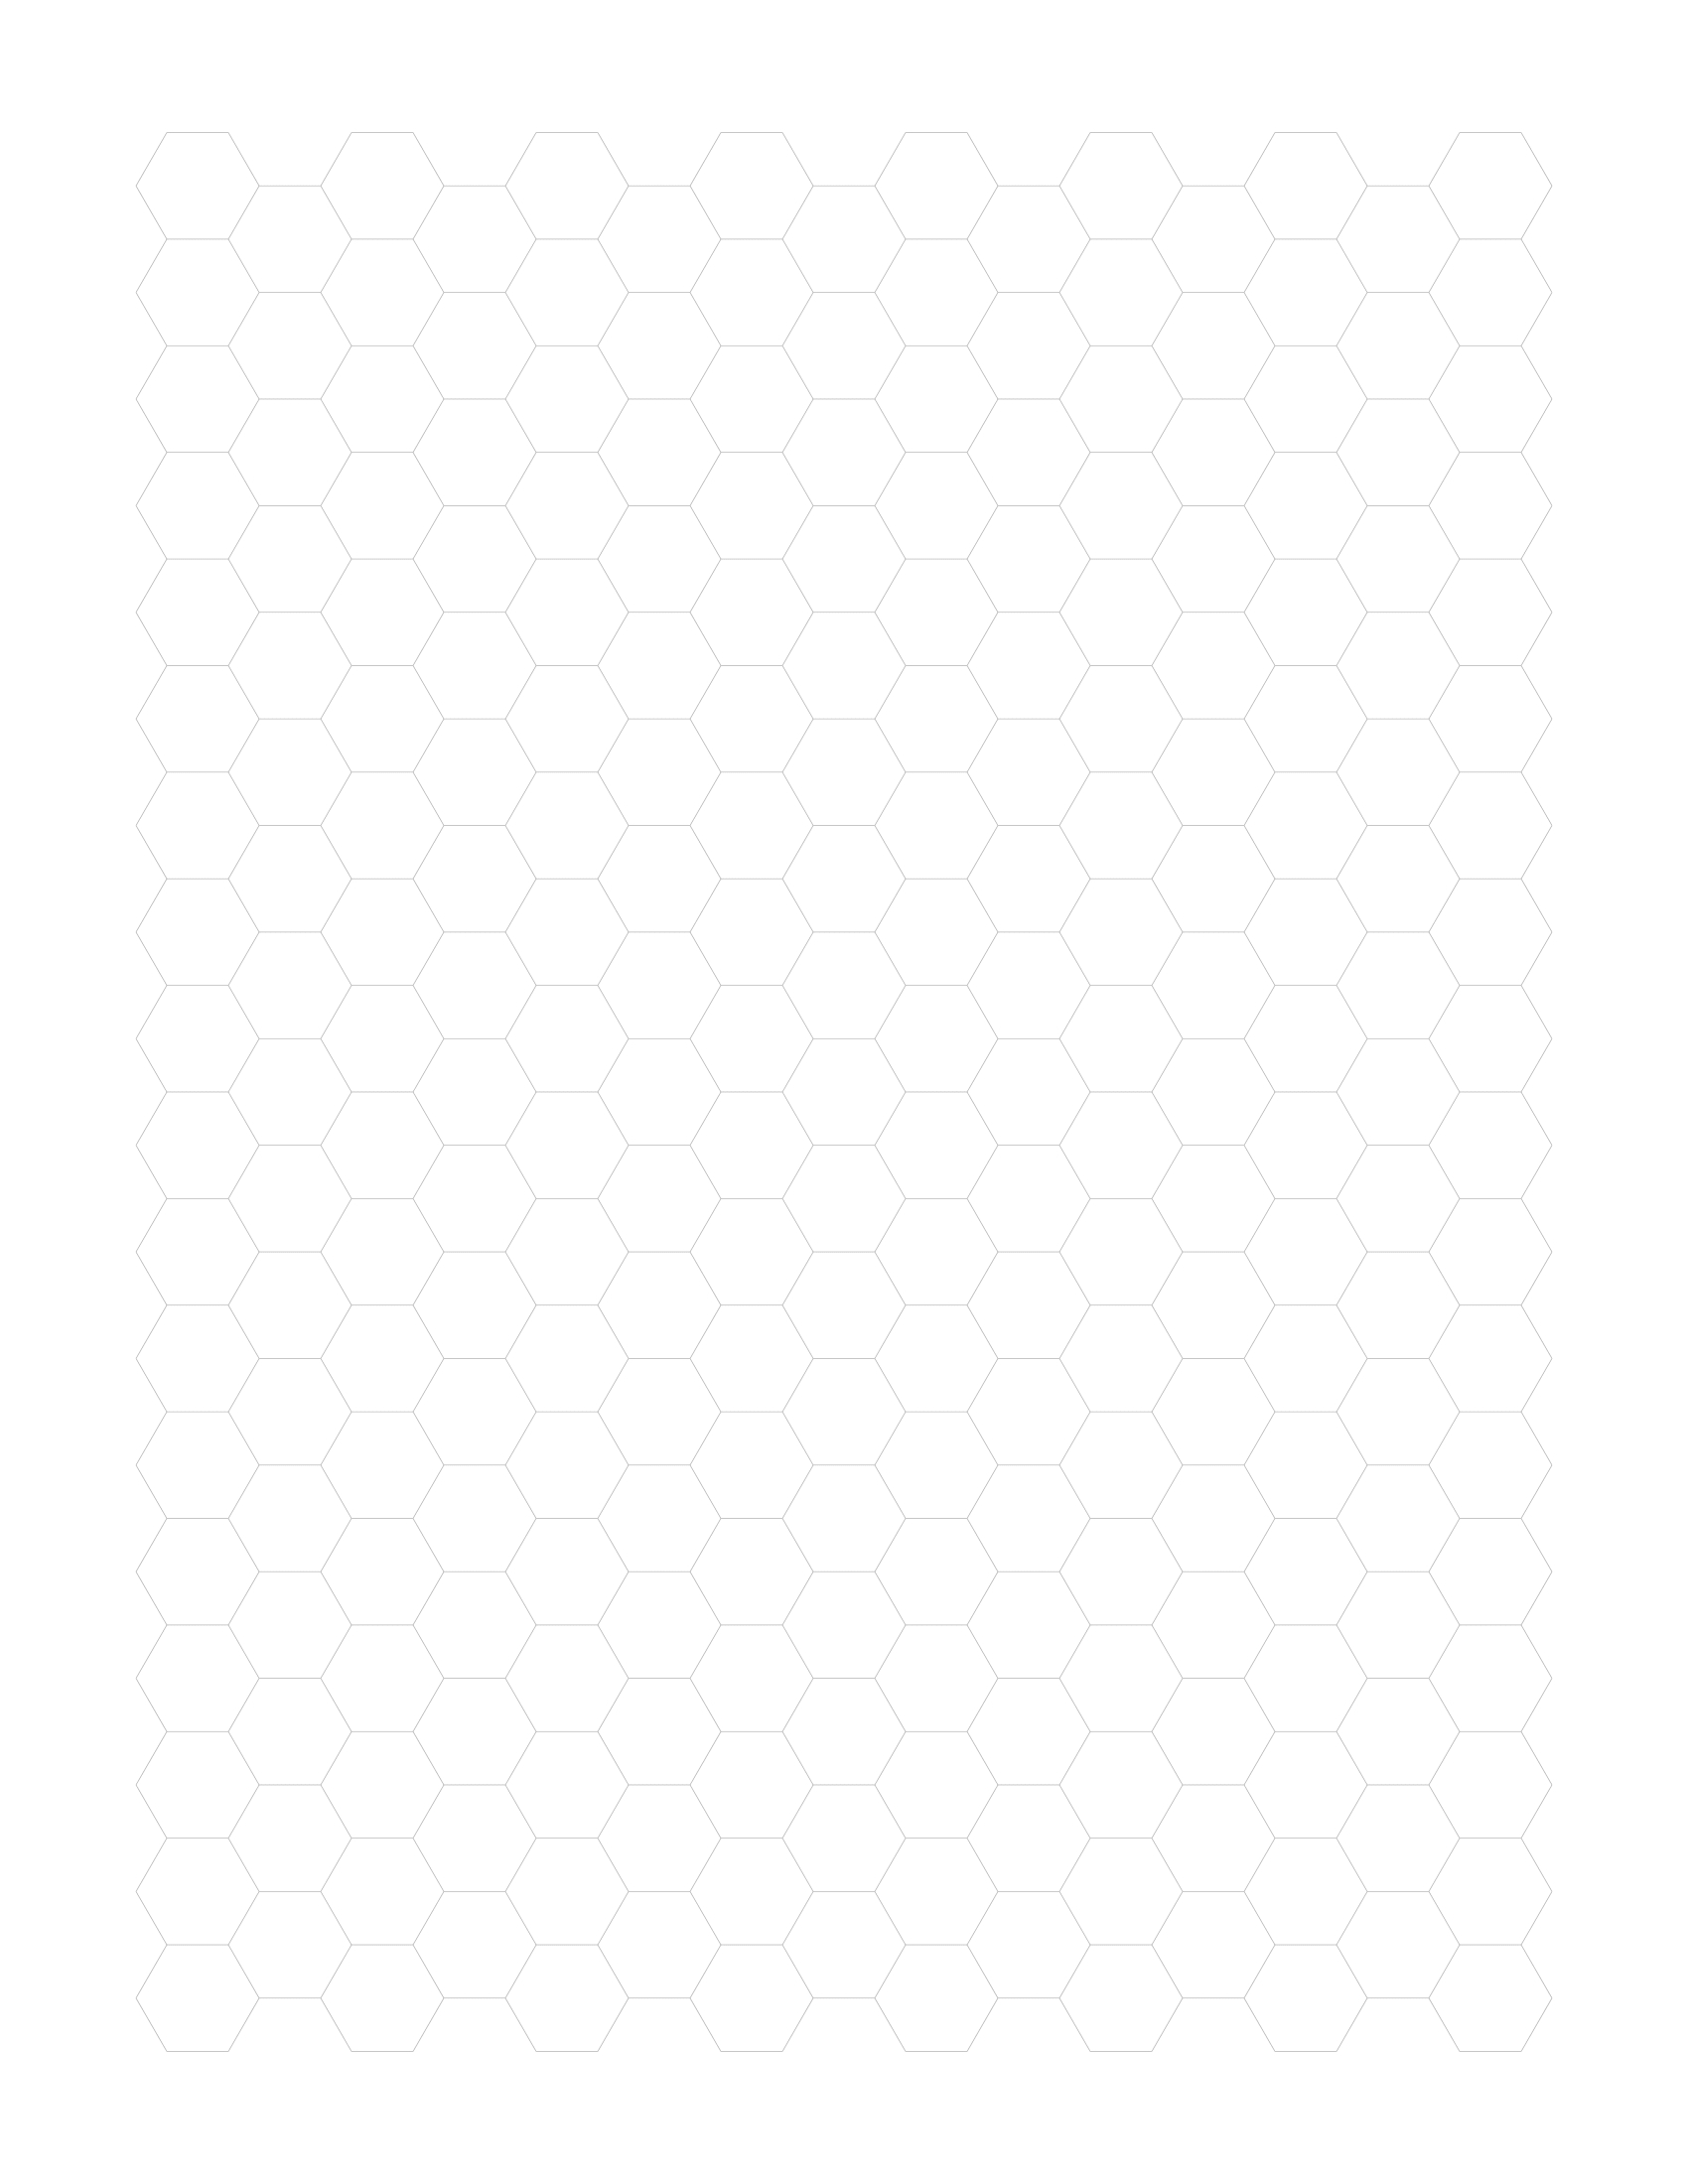 Free Online Graph Paper / Hexagonal